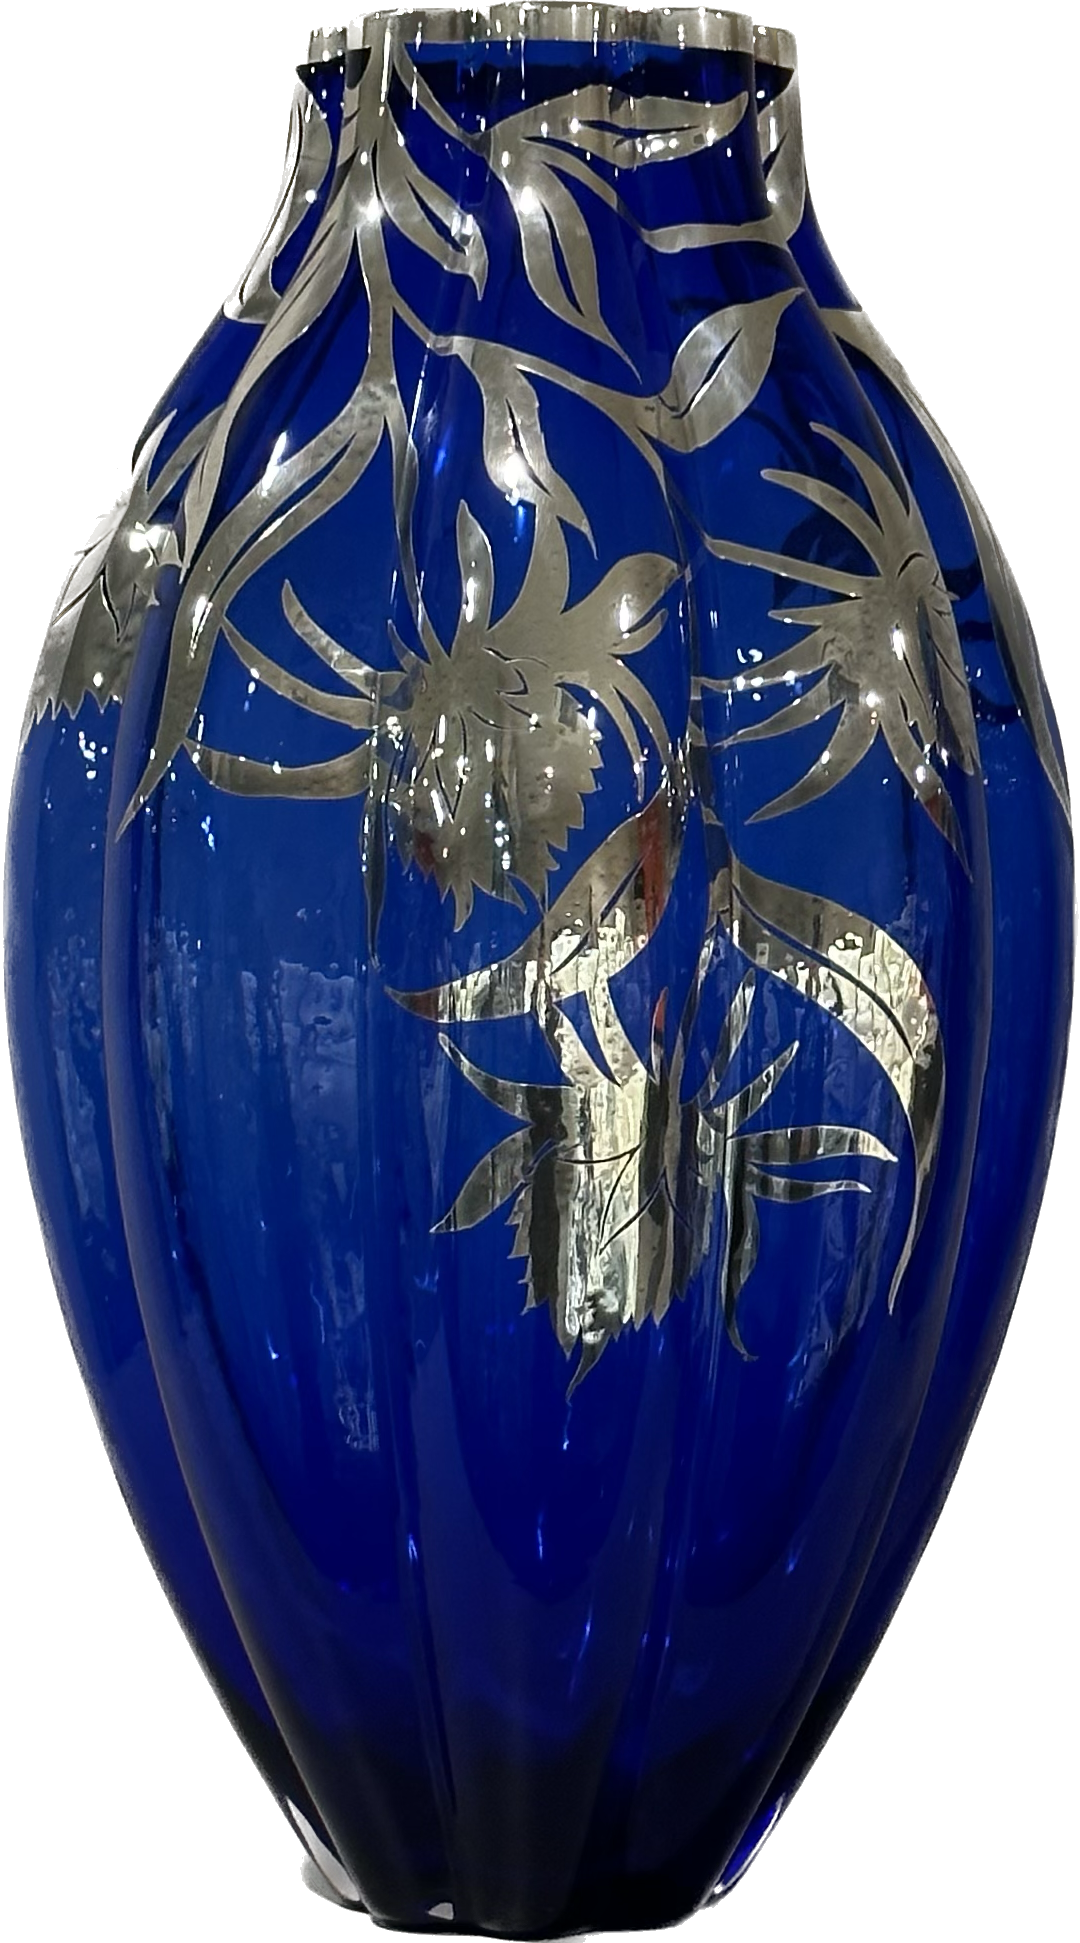 Arranjos de arte vaso de vidro soprado azul decoração prata Flores_Azul